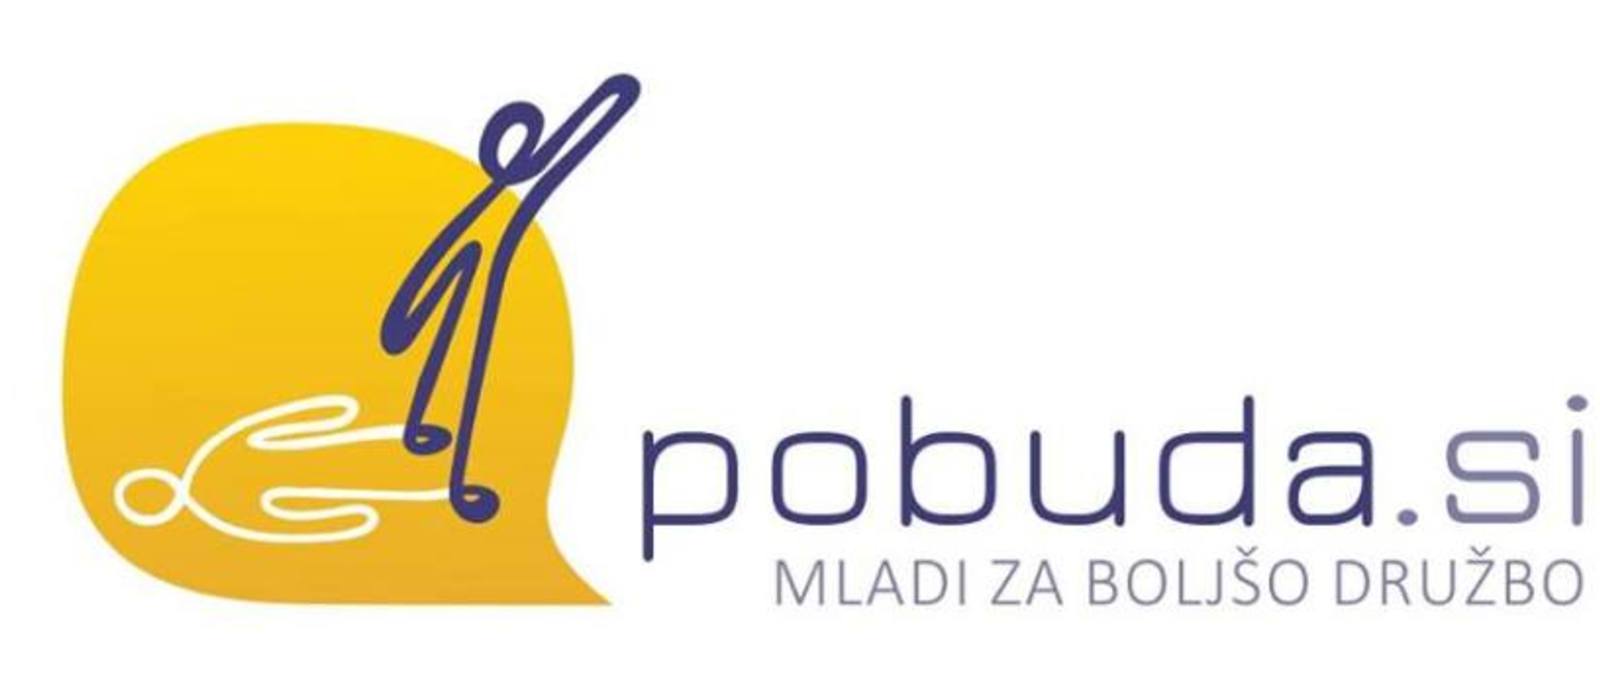  POBUDA.SI- delavnica mladinske participacije